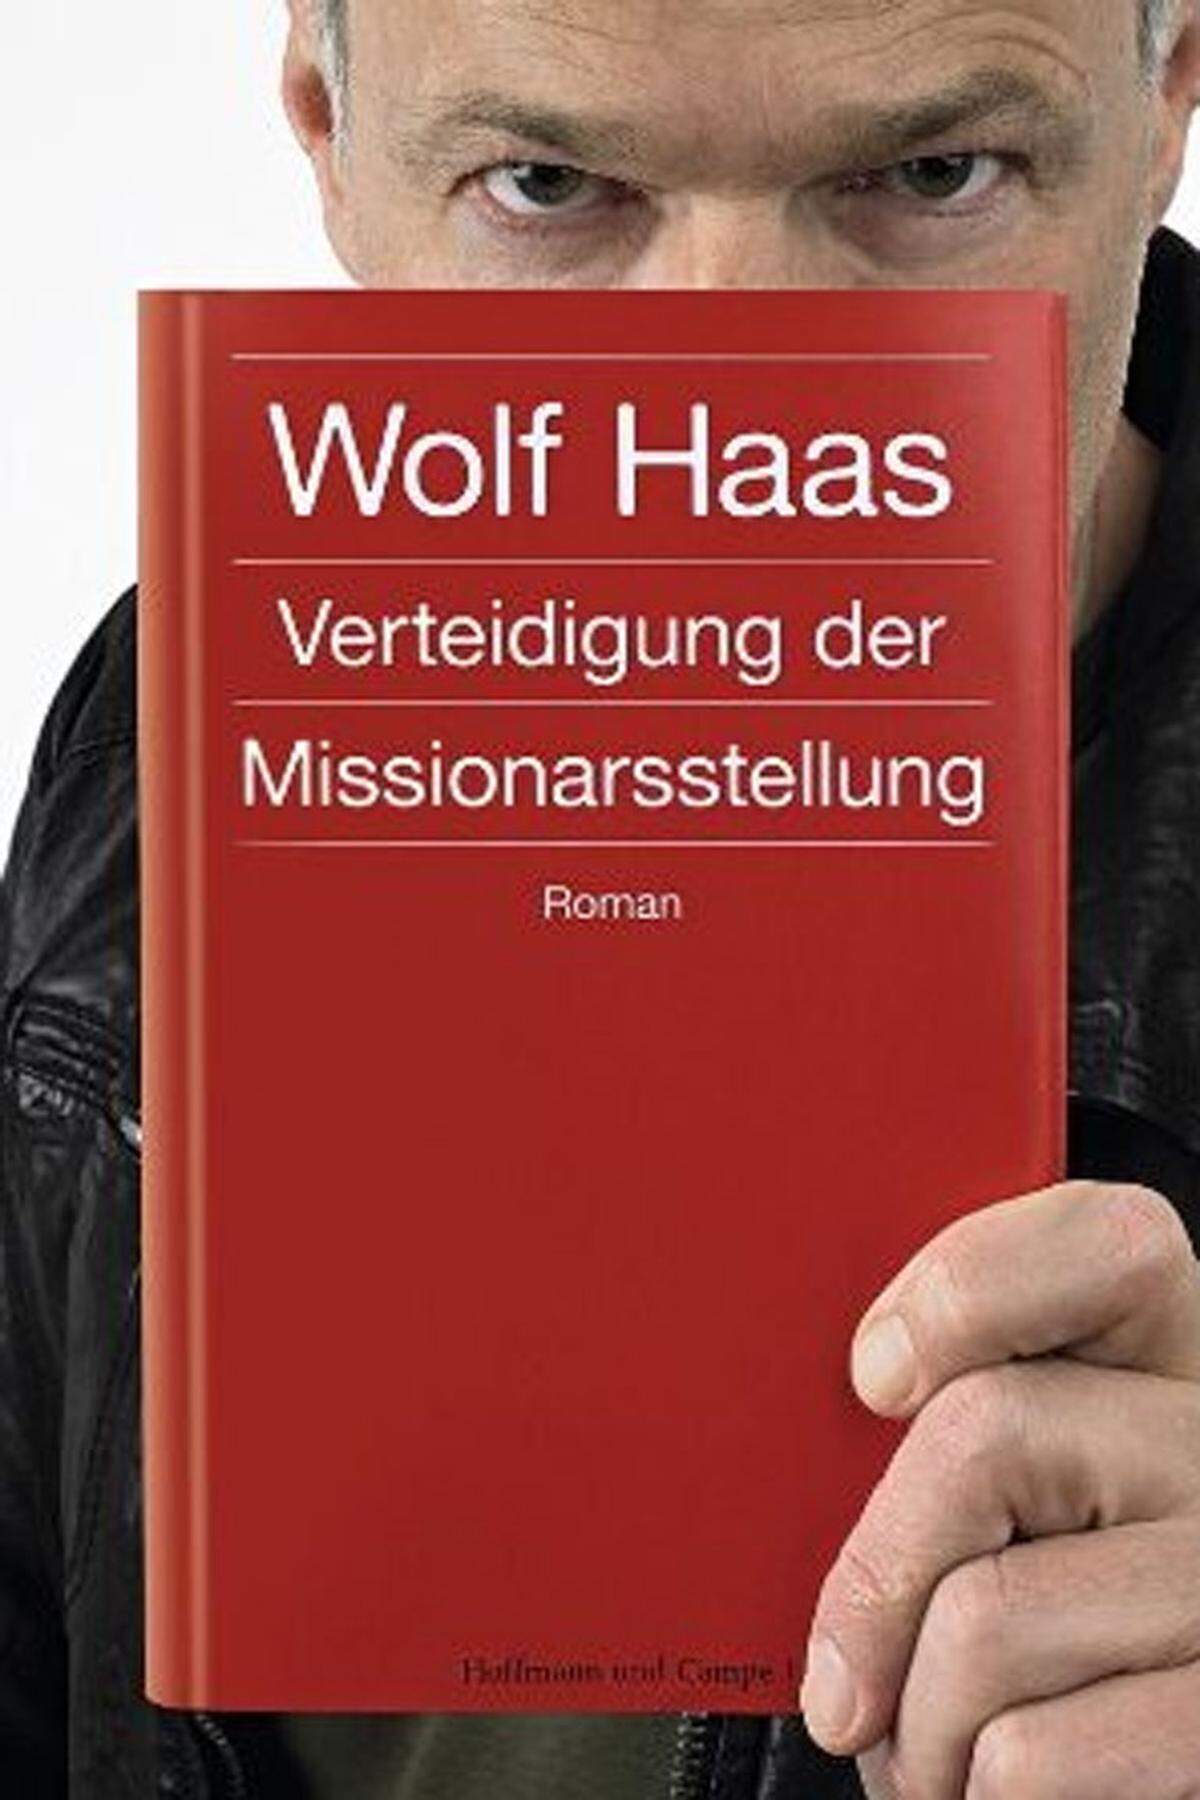 Das Finale der O-Töne am 30. August bestreitet Wolf Haas, der seinen neuen Roman "Verteidigung der Missionarsstellung" vorstellen wird. Es geht um die Liebeseskapaden eines Benjamin Lee Baumgartner, über das Verlieben, das Verliebtsein und über das Schreiben darüber.